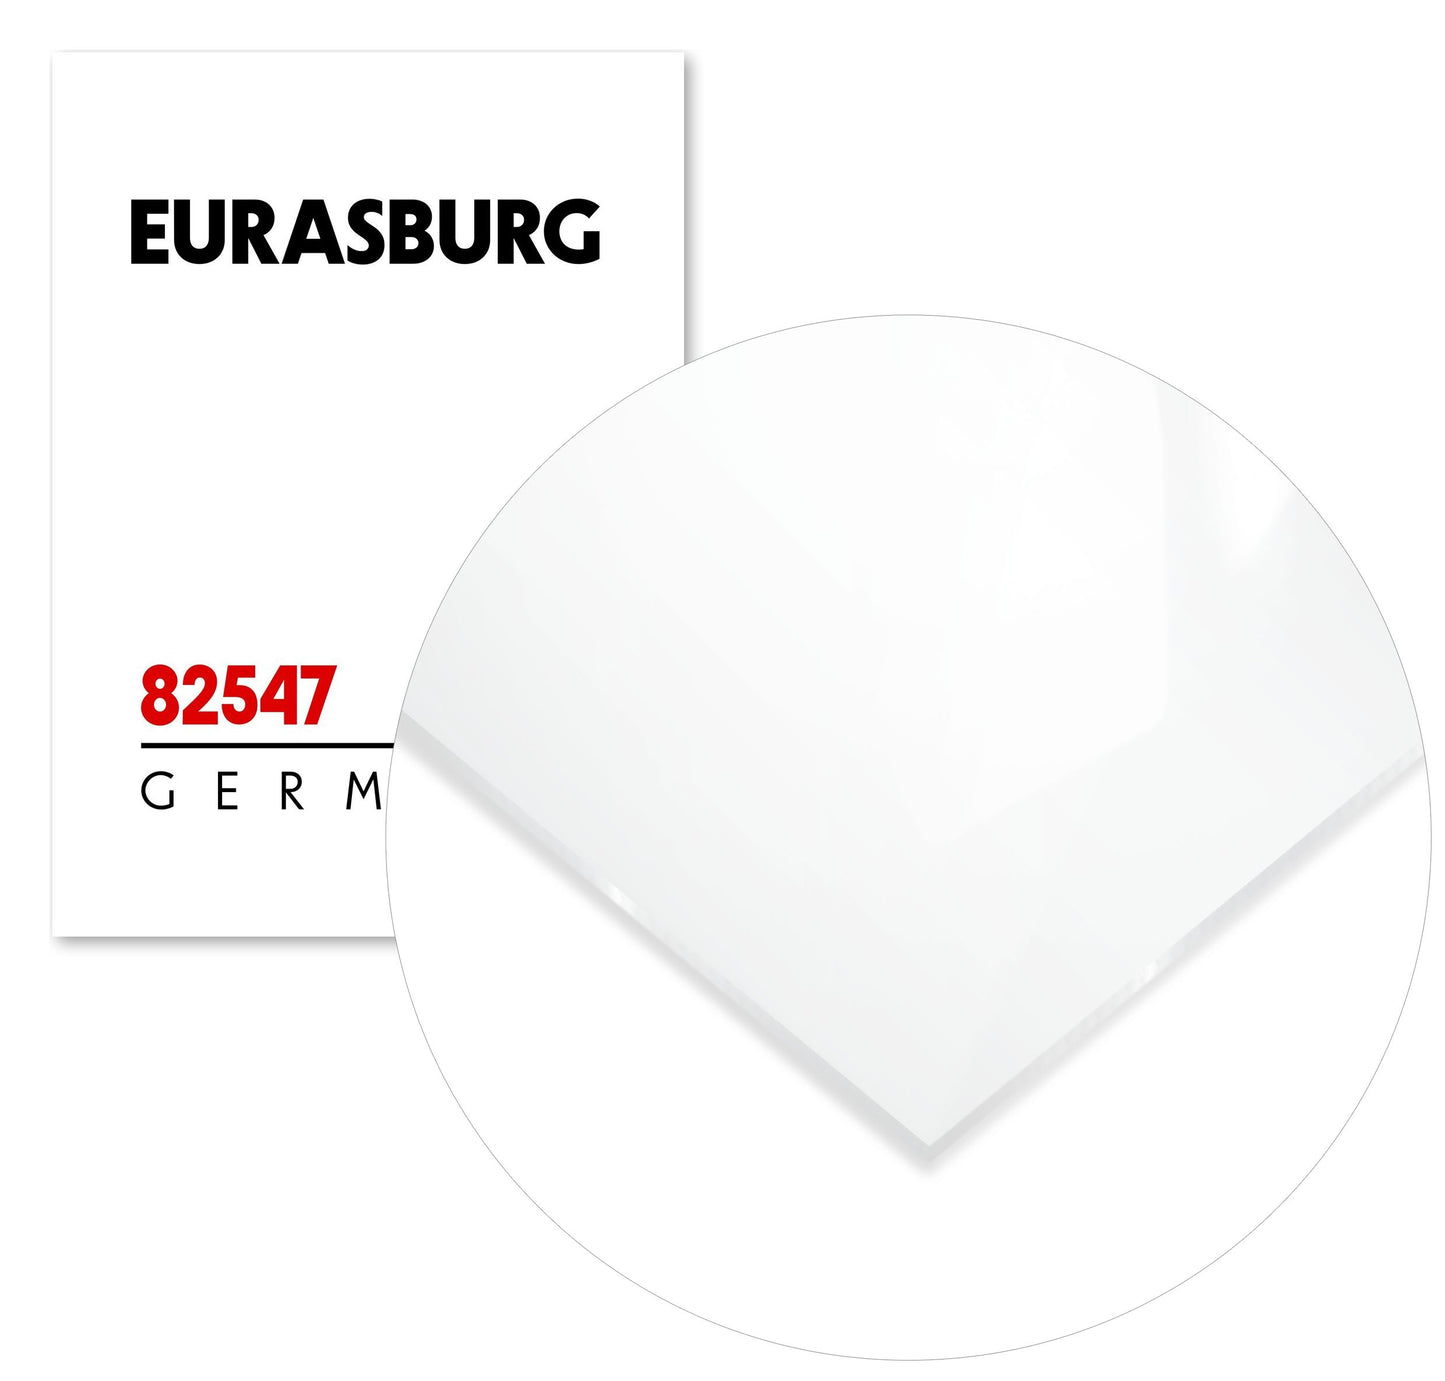 Eurasburg 82547 Postal Code - @VickyHanggara